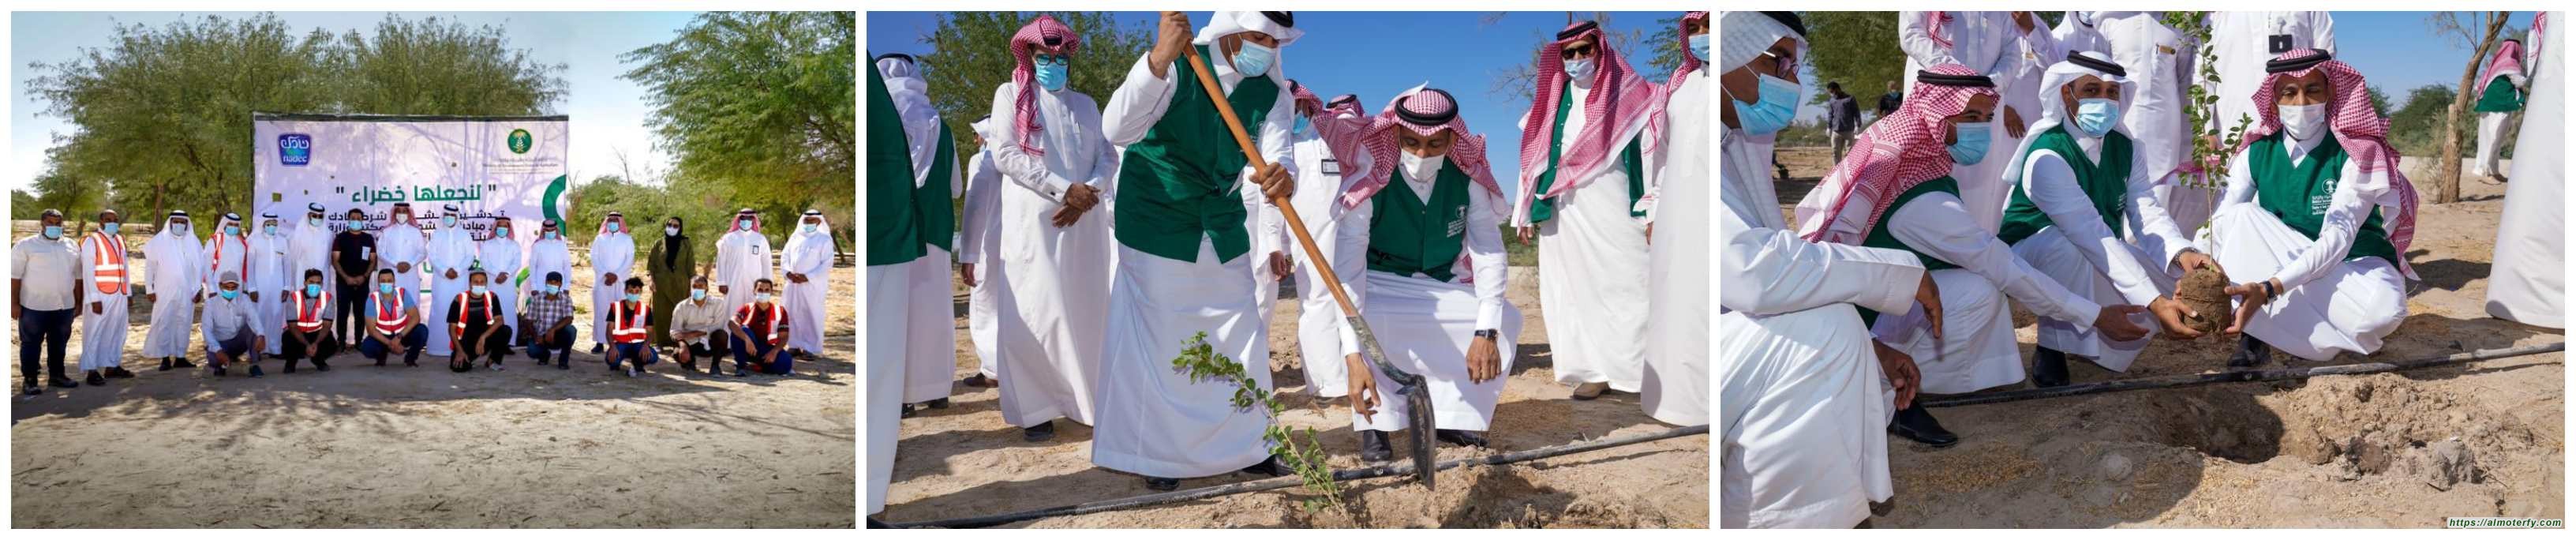 " البيئة " بالأحساء تطلق مبادرة لنجعلها خضراء بزراعة 85 ألف شجرة في عدد من المواقع بالمحافظة بتعاون مع" نادك "